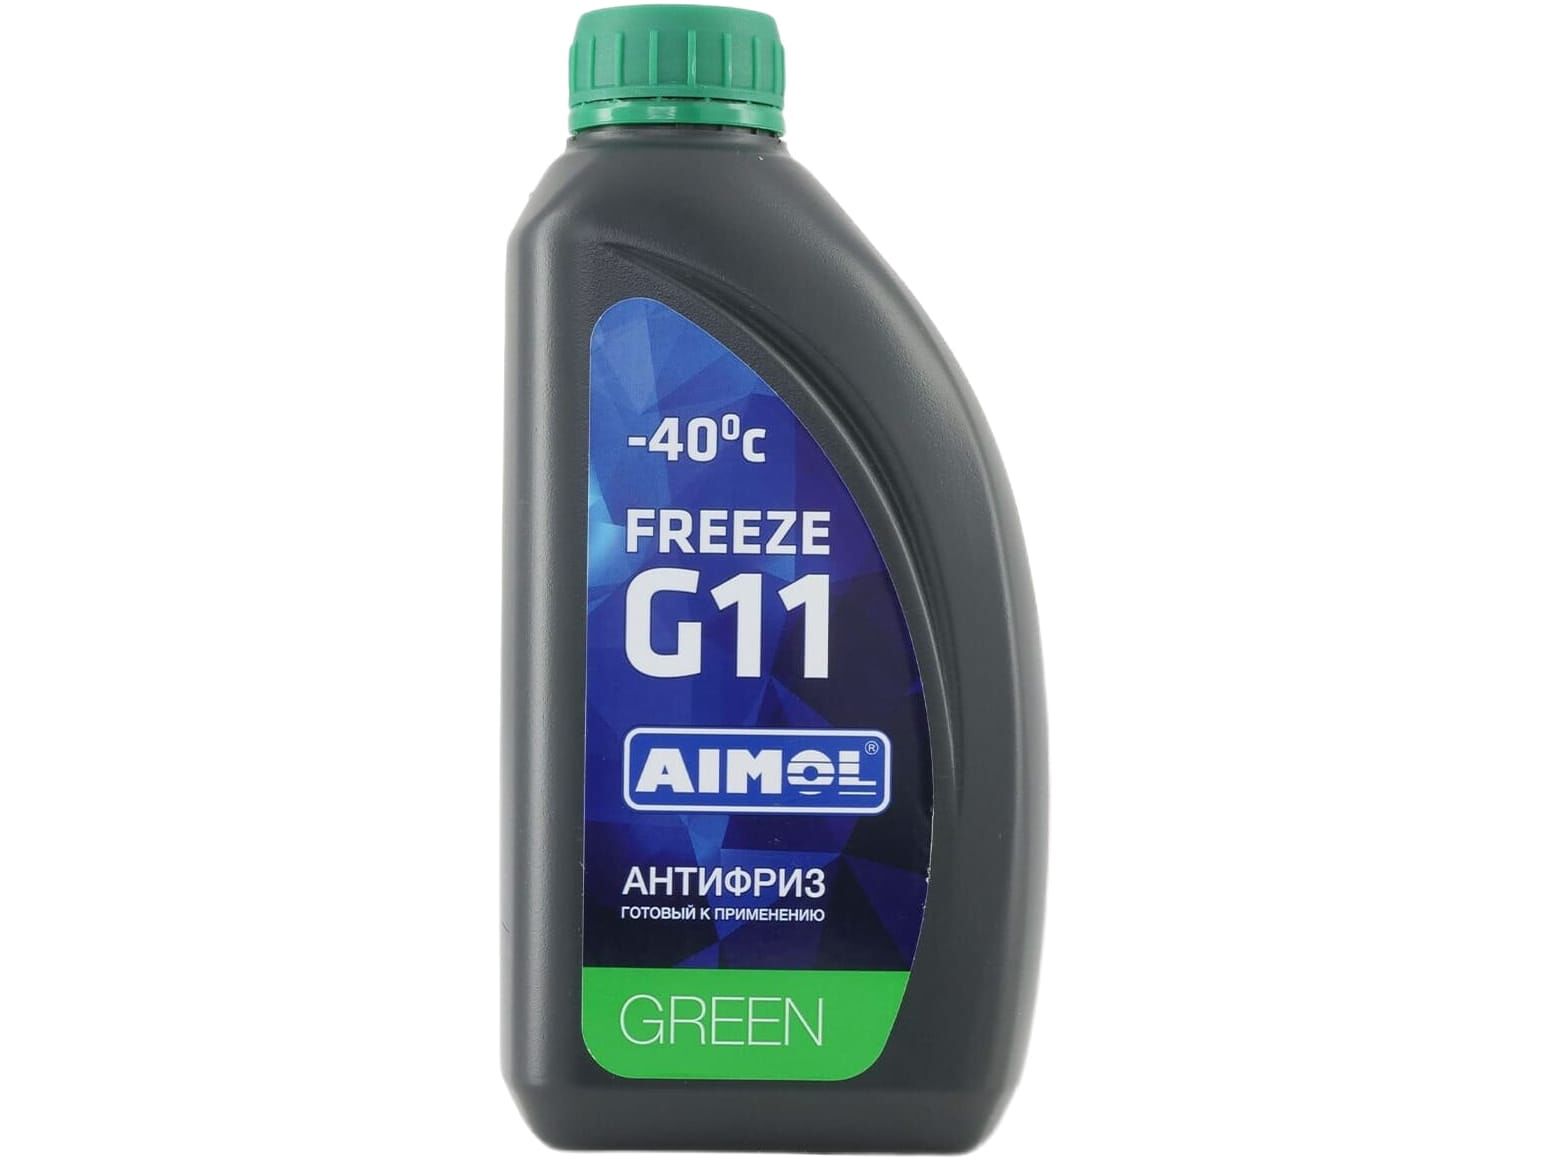 Антифриз Aimol Freeze G11 Green, 1кг